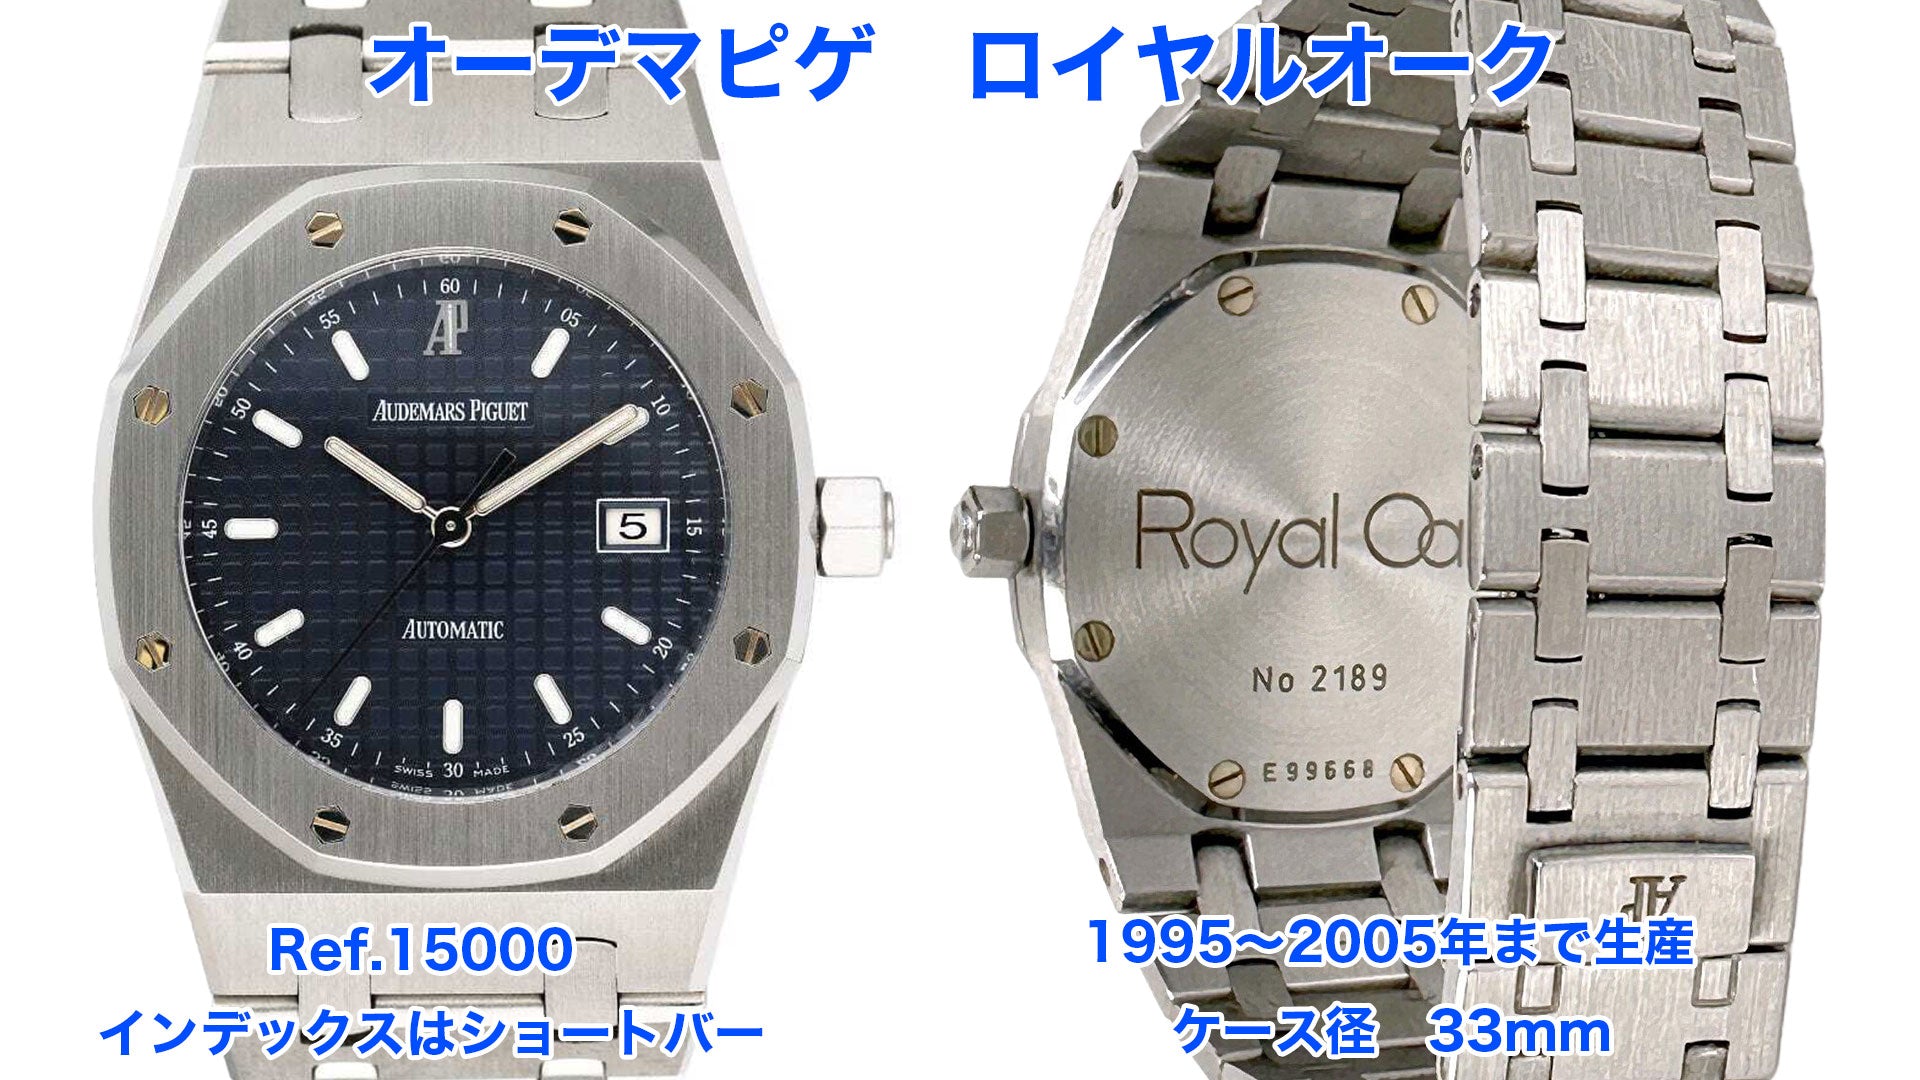 Audemars Piguet Royal Oak Watch Ref.15000